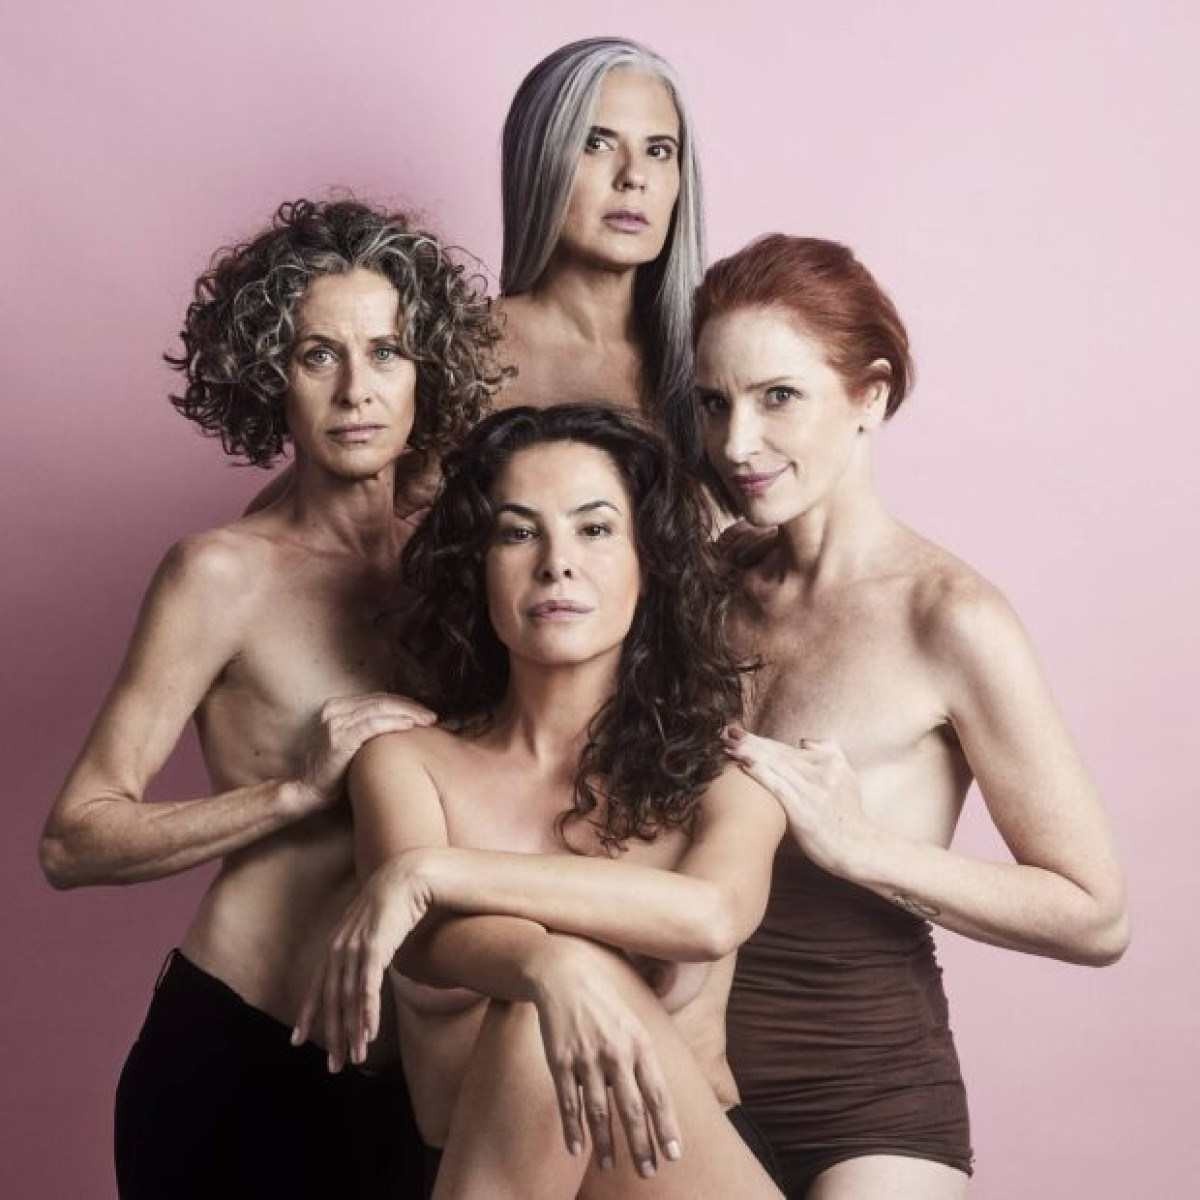 Modelos lançam manifesto contra invisibilidade feminina depois dos 50 anos